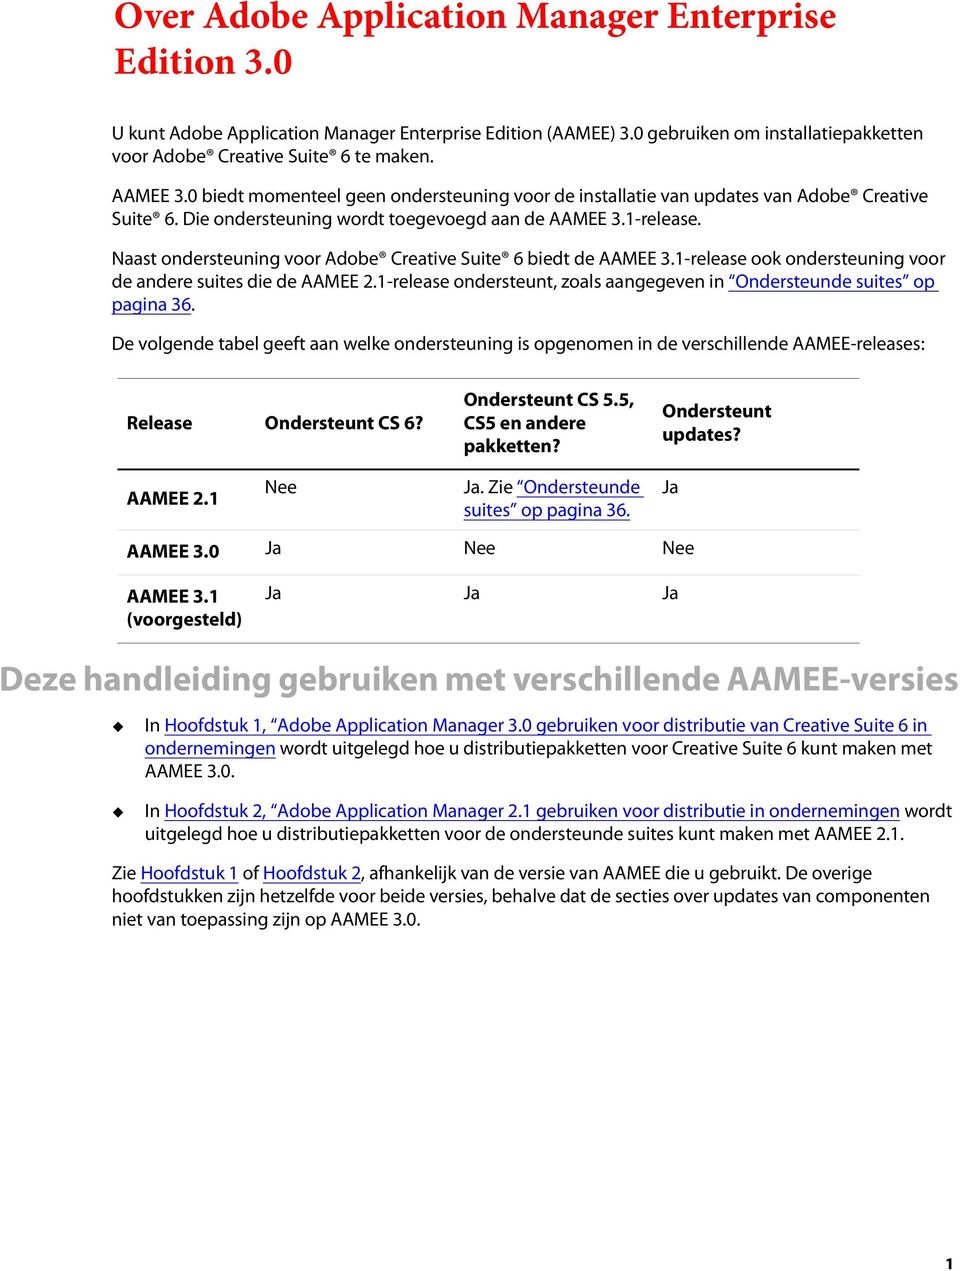 Naast ondersteuning voor Adobe Creative Suite 6 biedt de AAMEE 3.1-release ook ondersteuning voor de andere suites die de AAMEE 2.